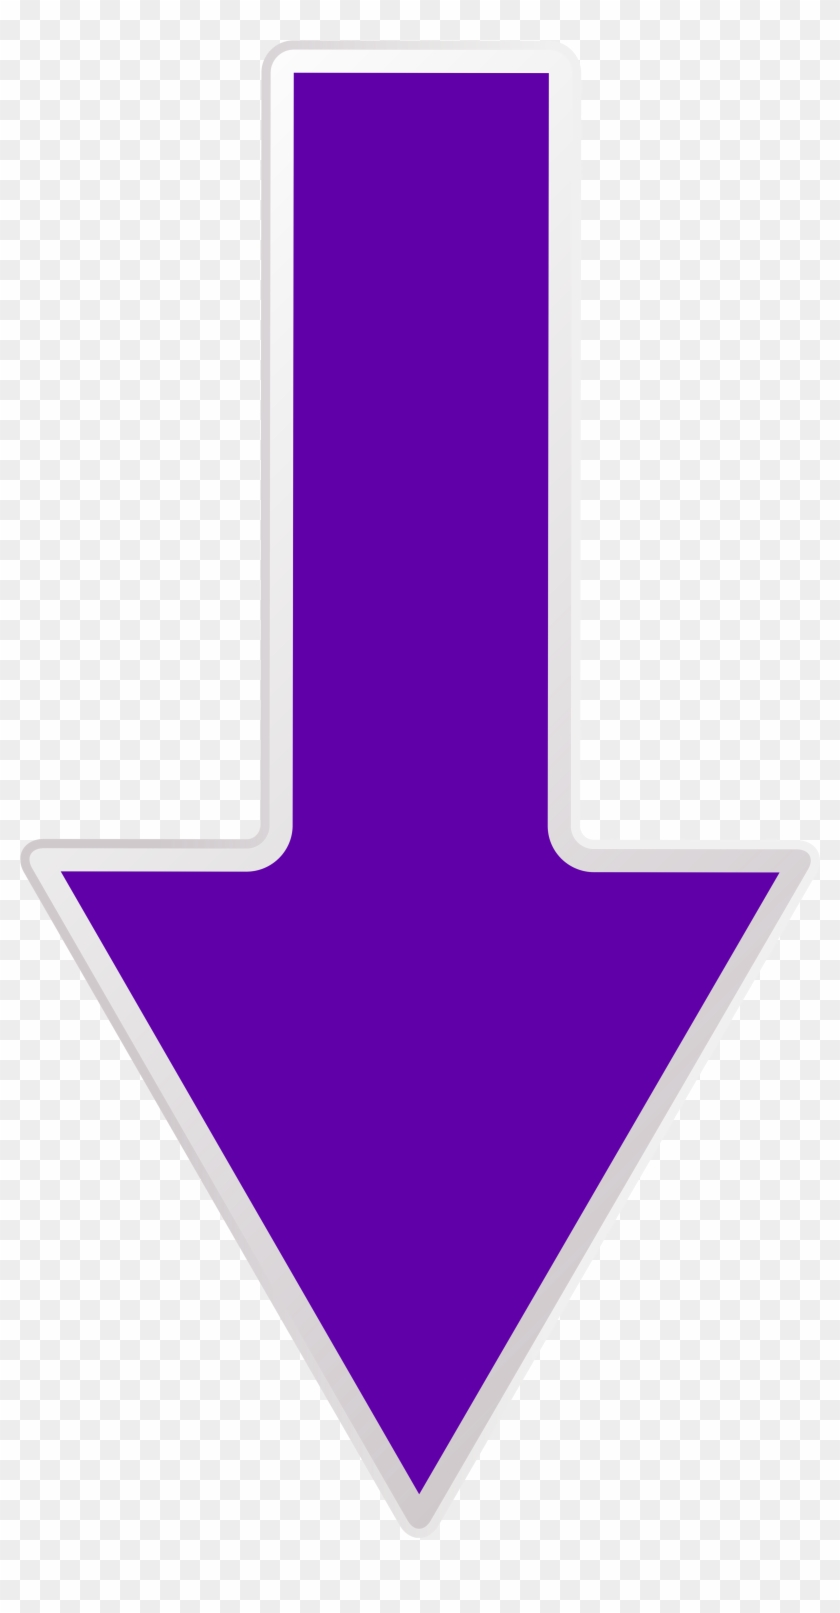 Arrow Purple Down Transparent Png Clip Art Image - Purple Arrow Transparent Background #408471